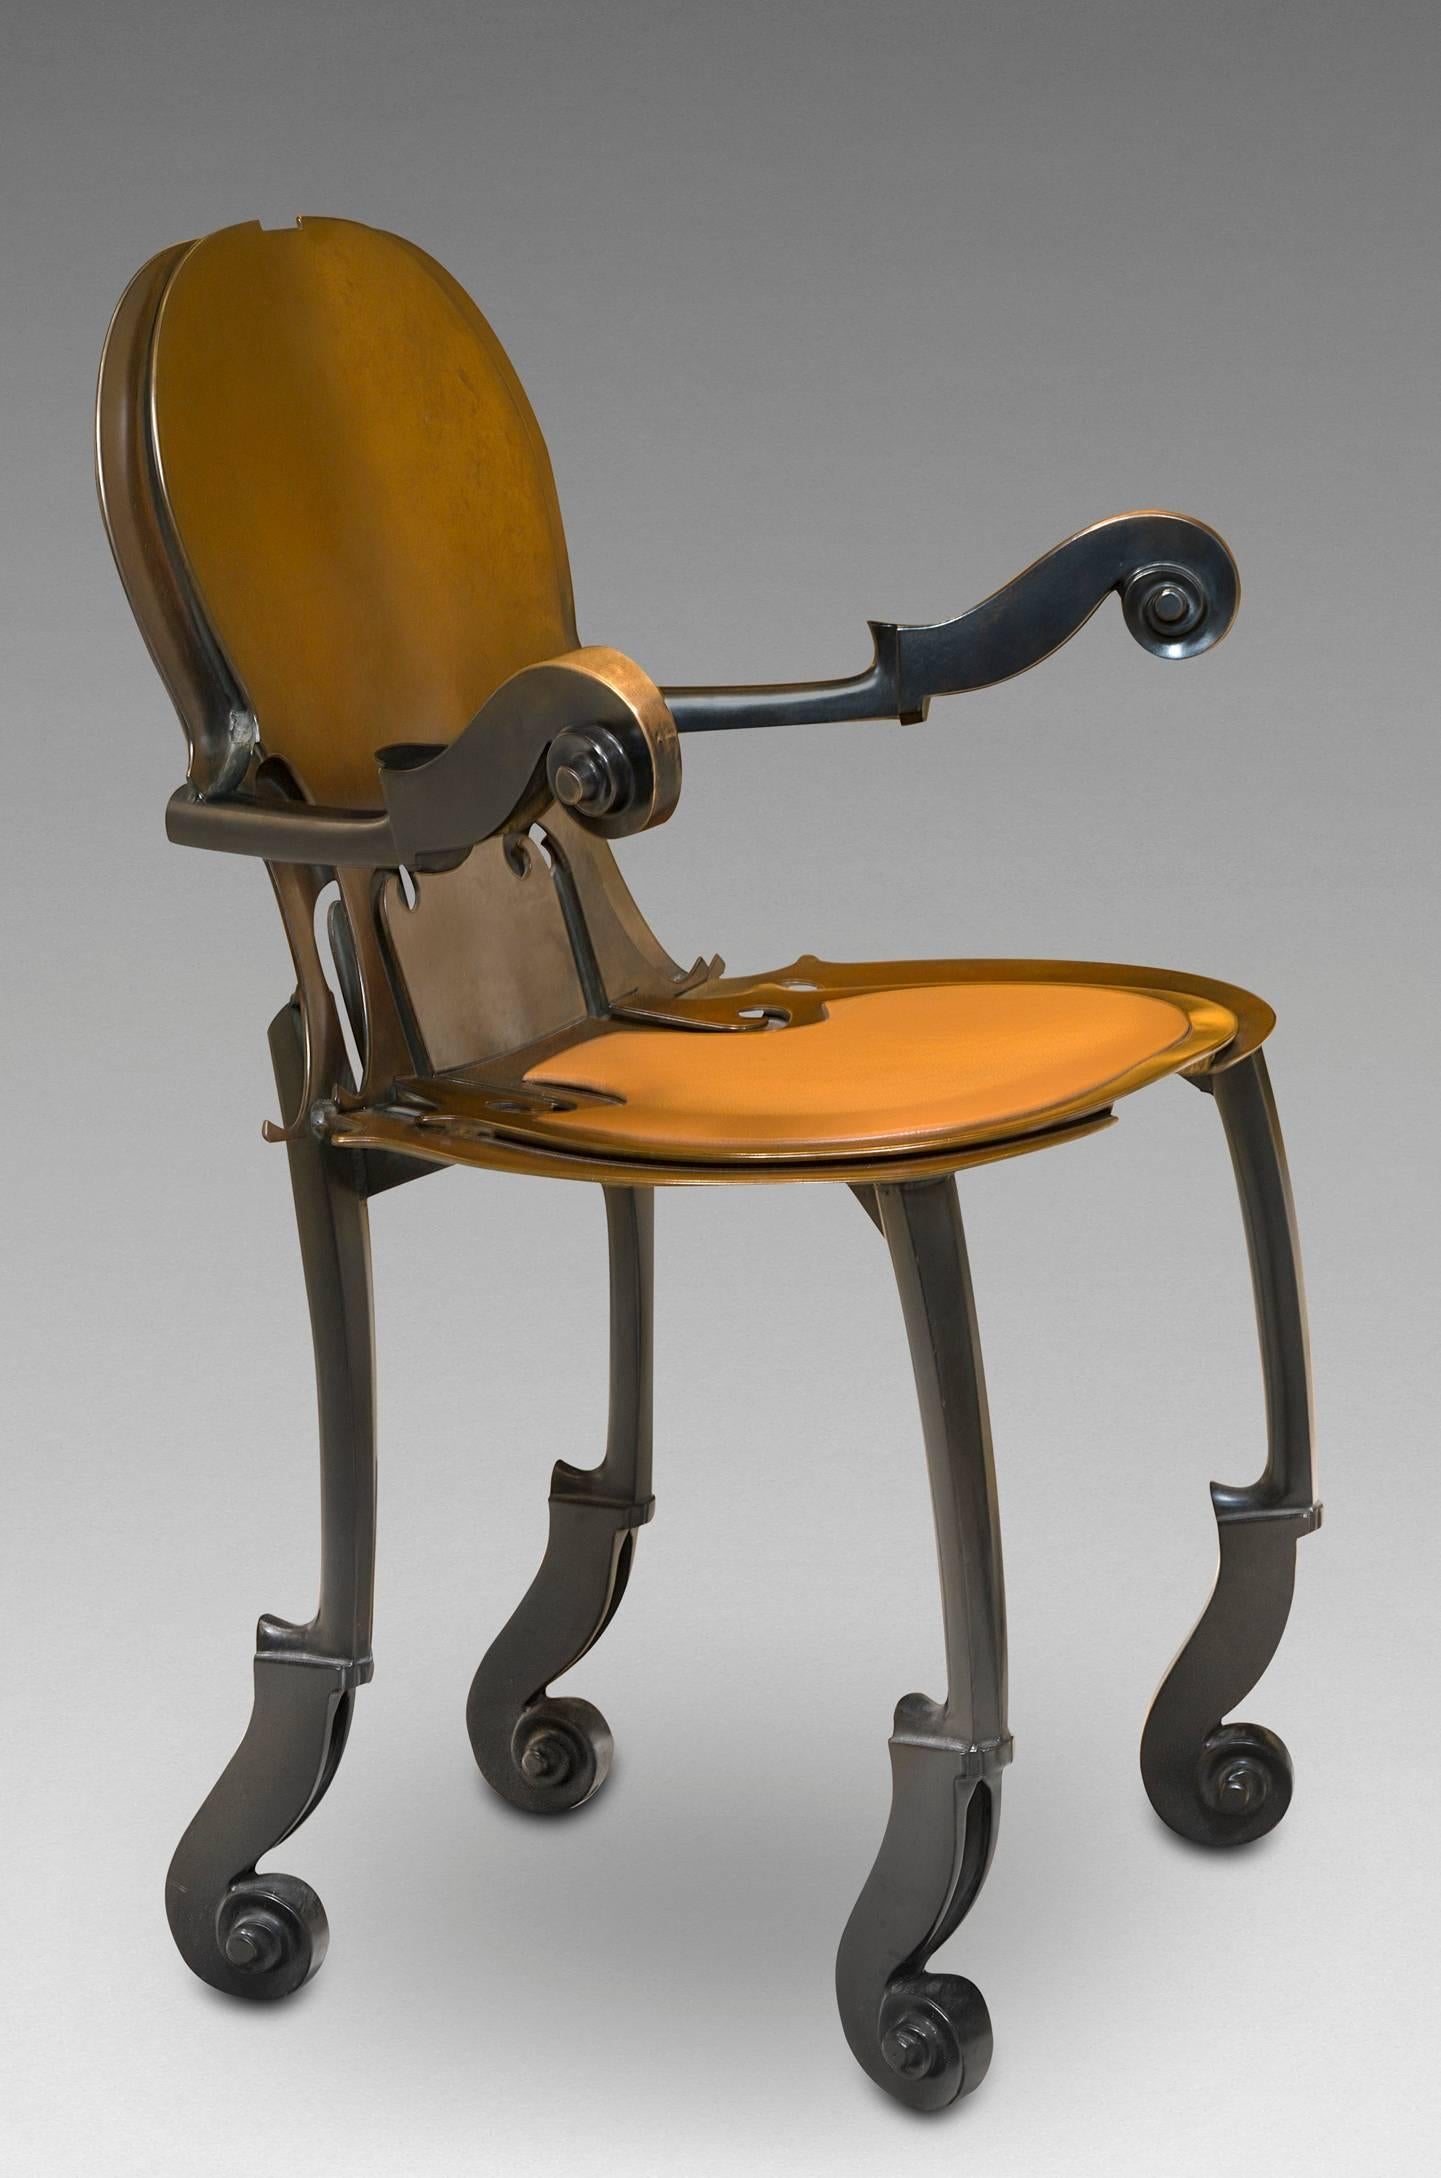 Arman
1928-2005, Français

Paire de fauteuils 
Bronze de 